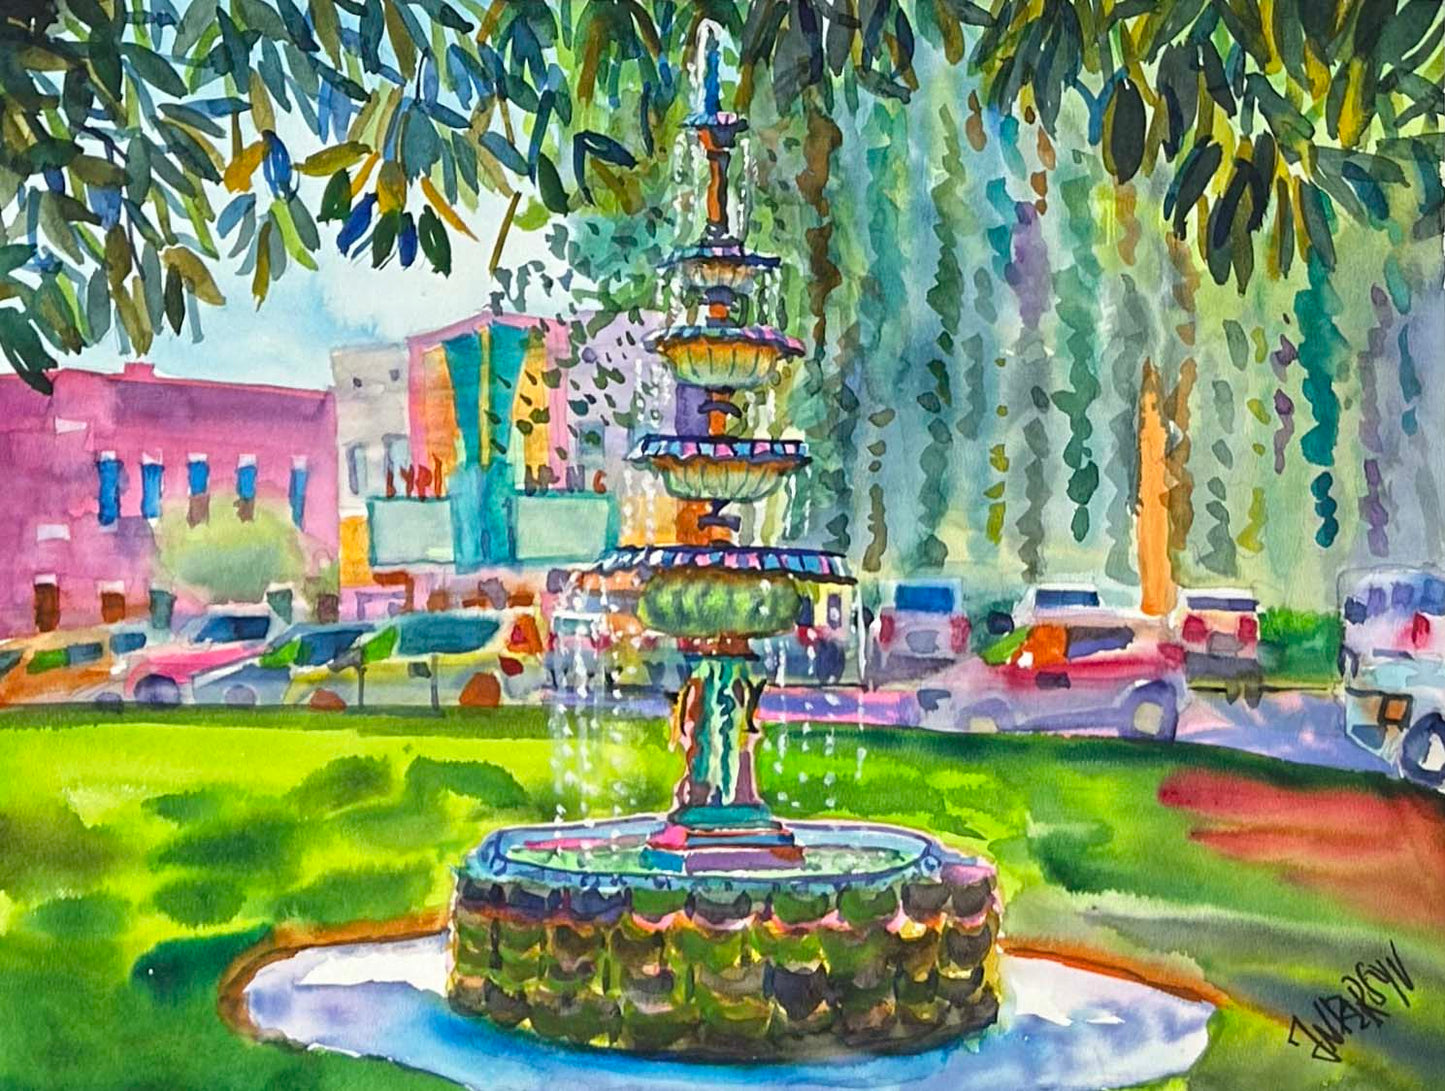 Tupelo Courthouse Fountain